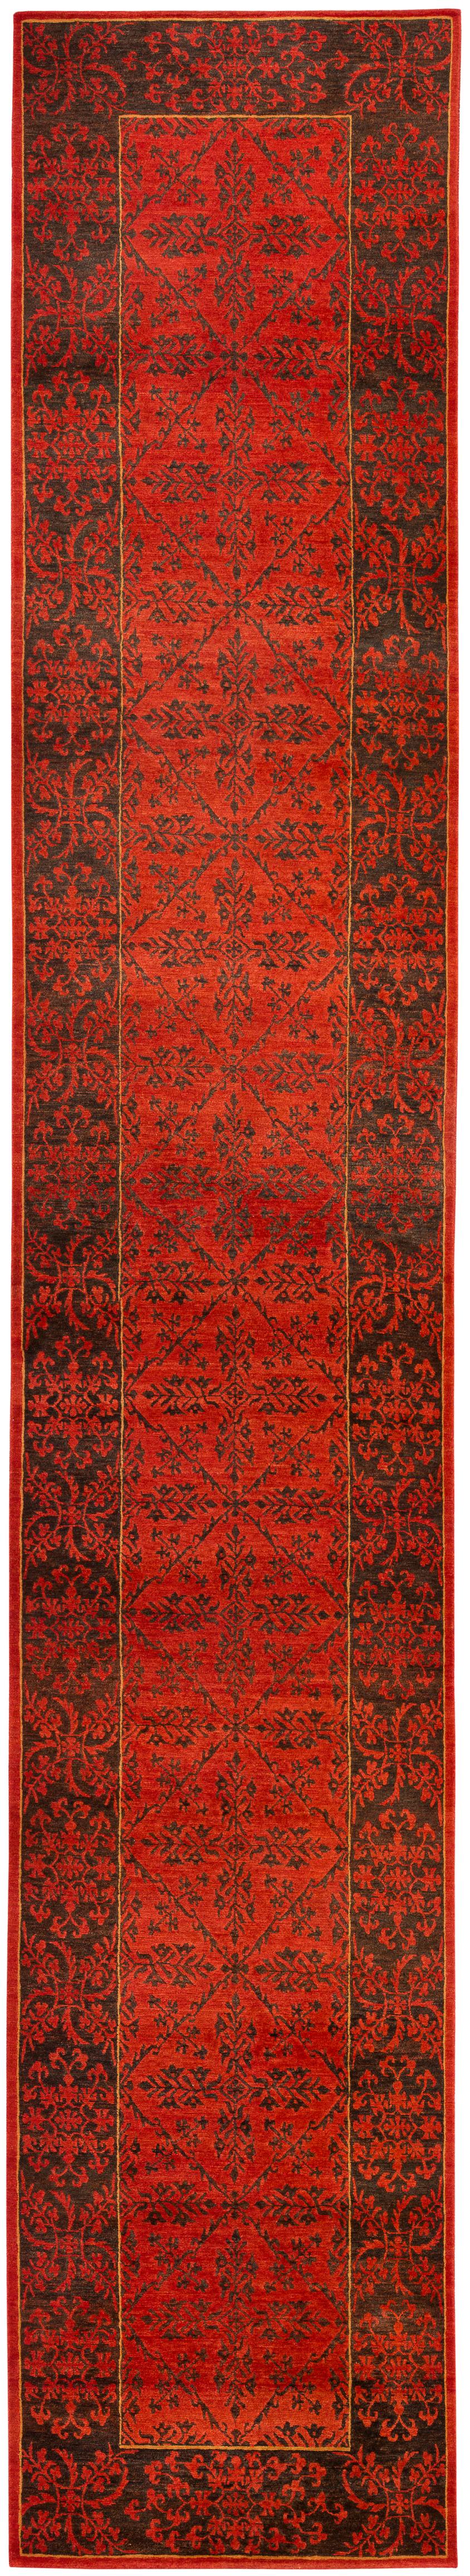 Dieser braune und rote Flurläufer zeigt ein traditionelles tibetisches Design. Dieser handgewebte Teppich aus feinster Himalaya-Wolle fühlt sich weich an und hat einen leichten Schimmer. Dies ist auf den Fotos zu sehen.